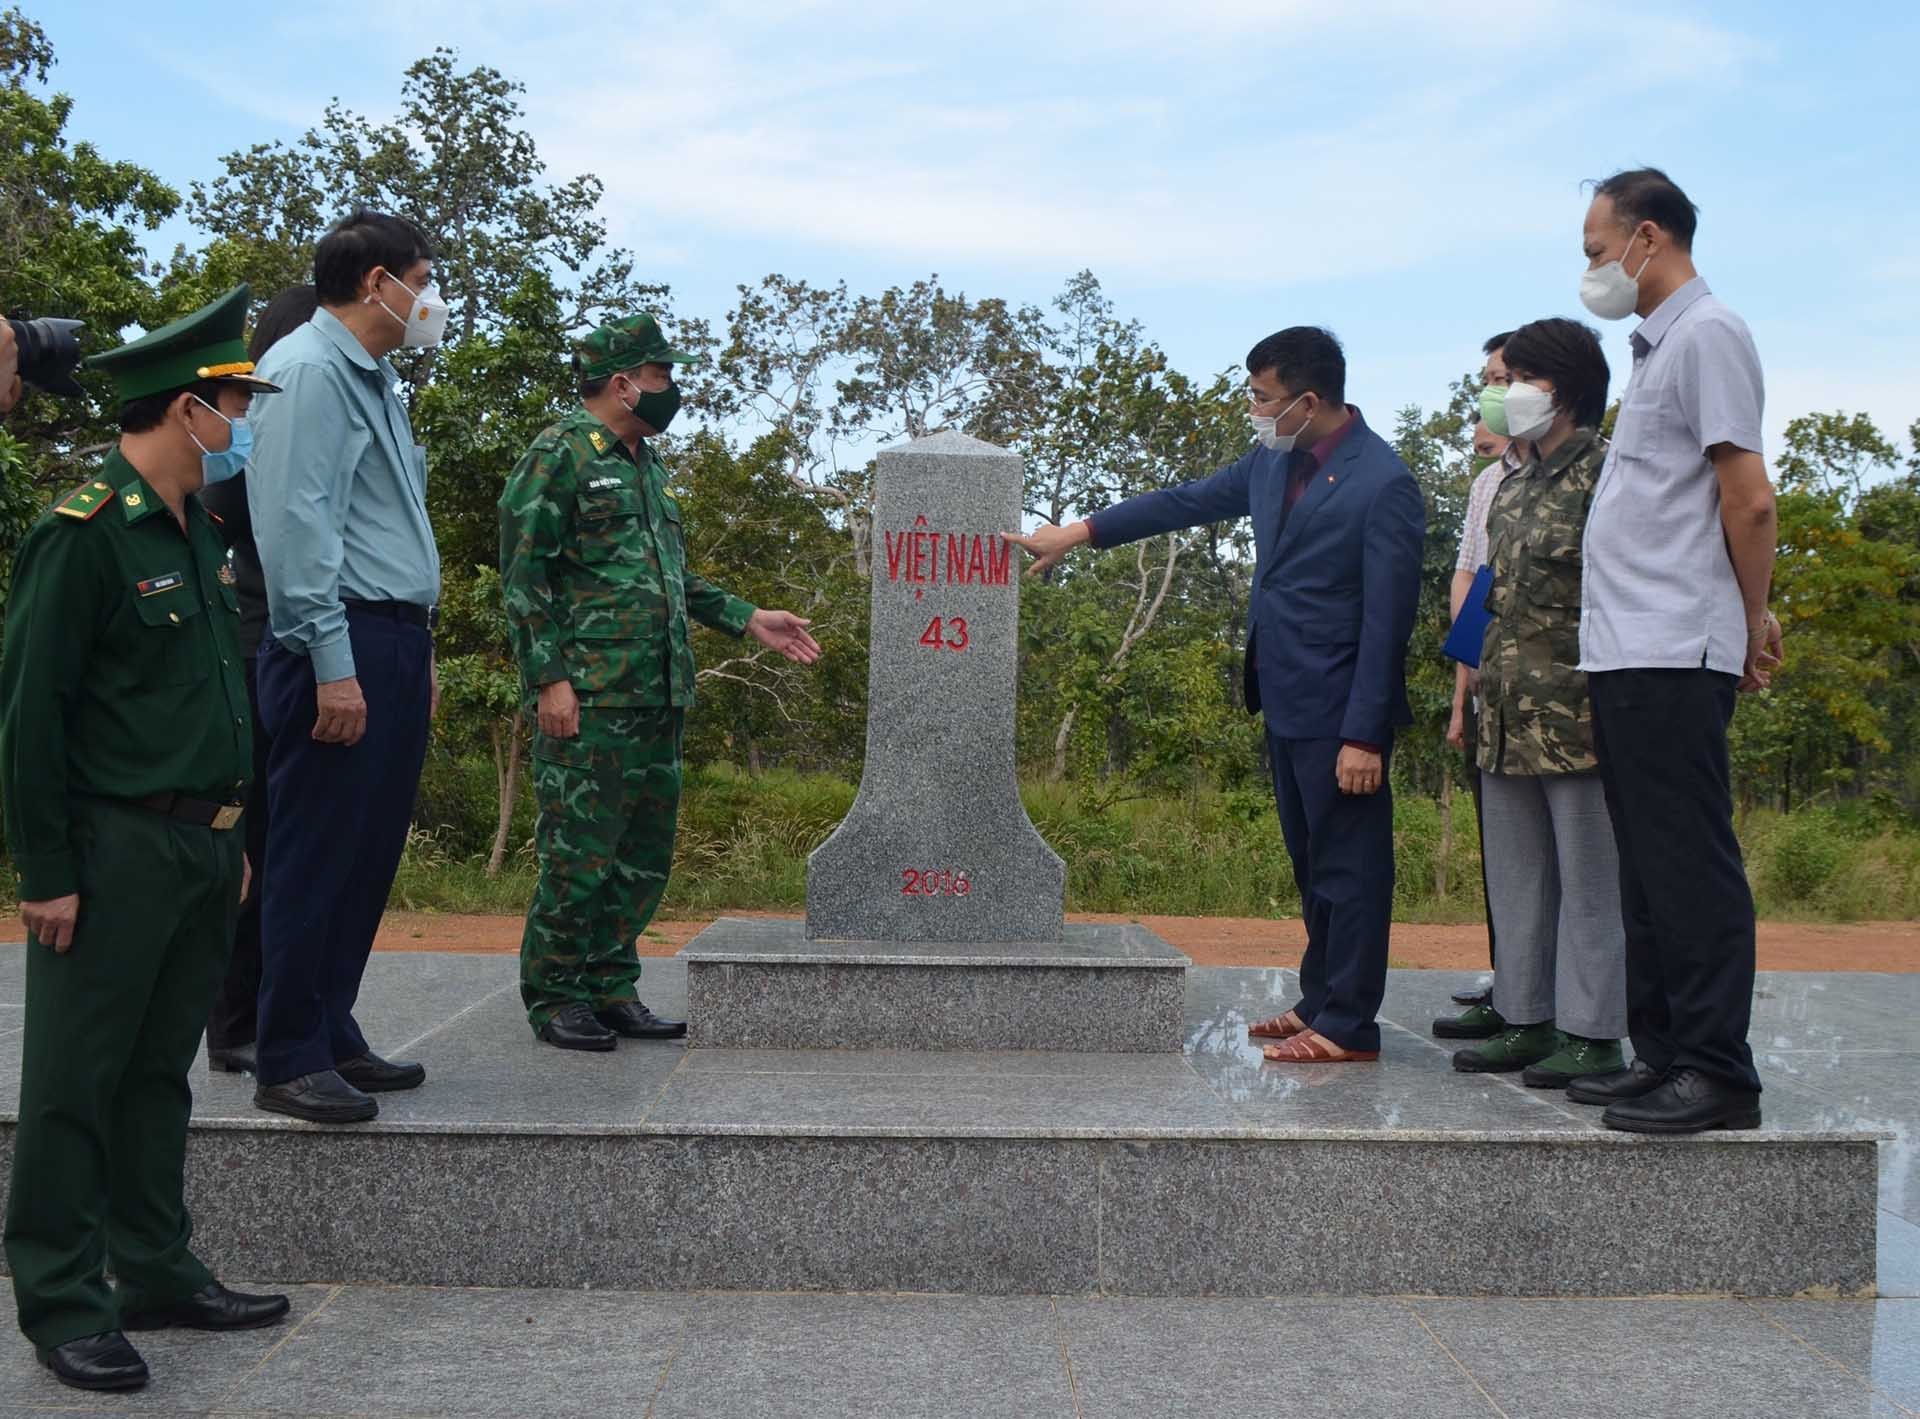 Thứ trưởng Ngoại giao Nguyễn Minh Vũ làm việc với các tỉnh Kon Tum, Gia Lai, Đắk Lắk về công tác biên giới